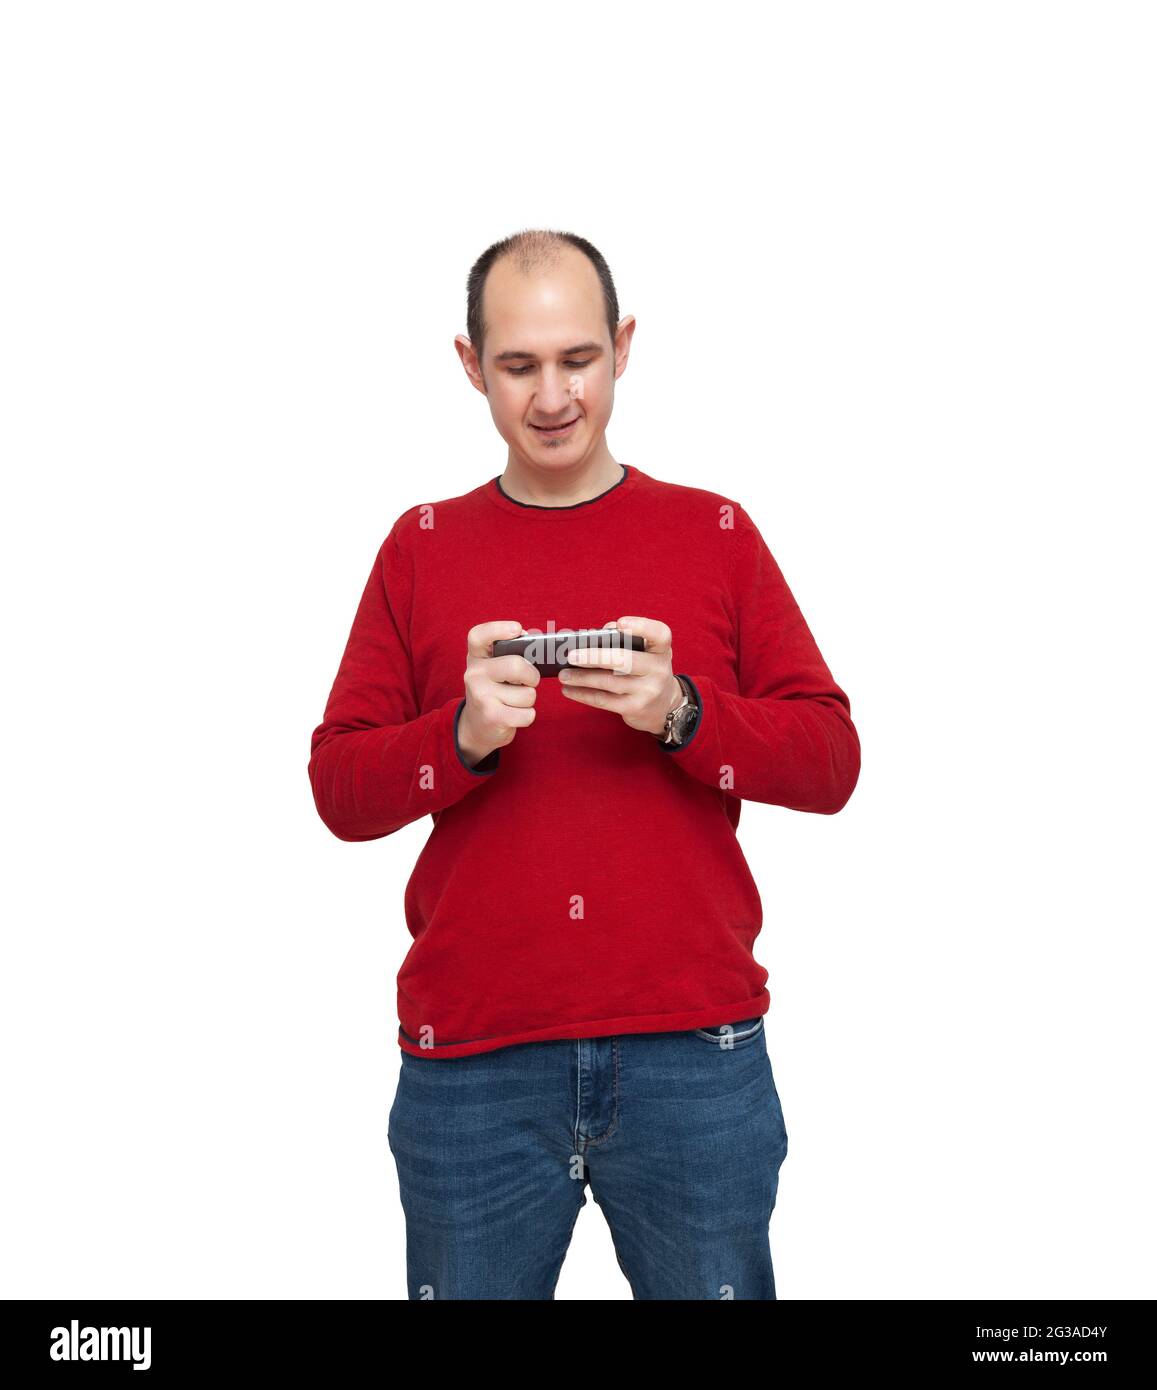 Ein kahler junger Mann spielt mit seinem Mobiltelefon ein Videospiel. Die Person ist mit einem roten Pullover, Jeans und einer Uhr bekleidet. Der Hintergrund ist Whi Stockfoto